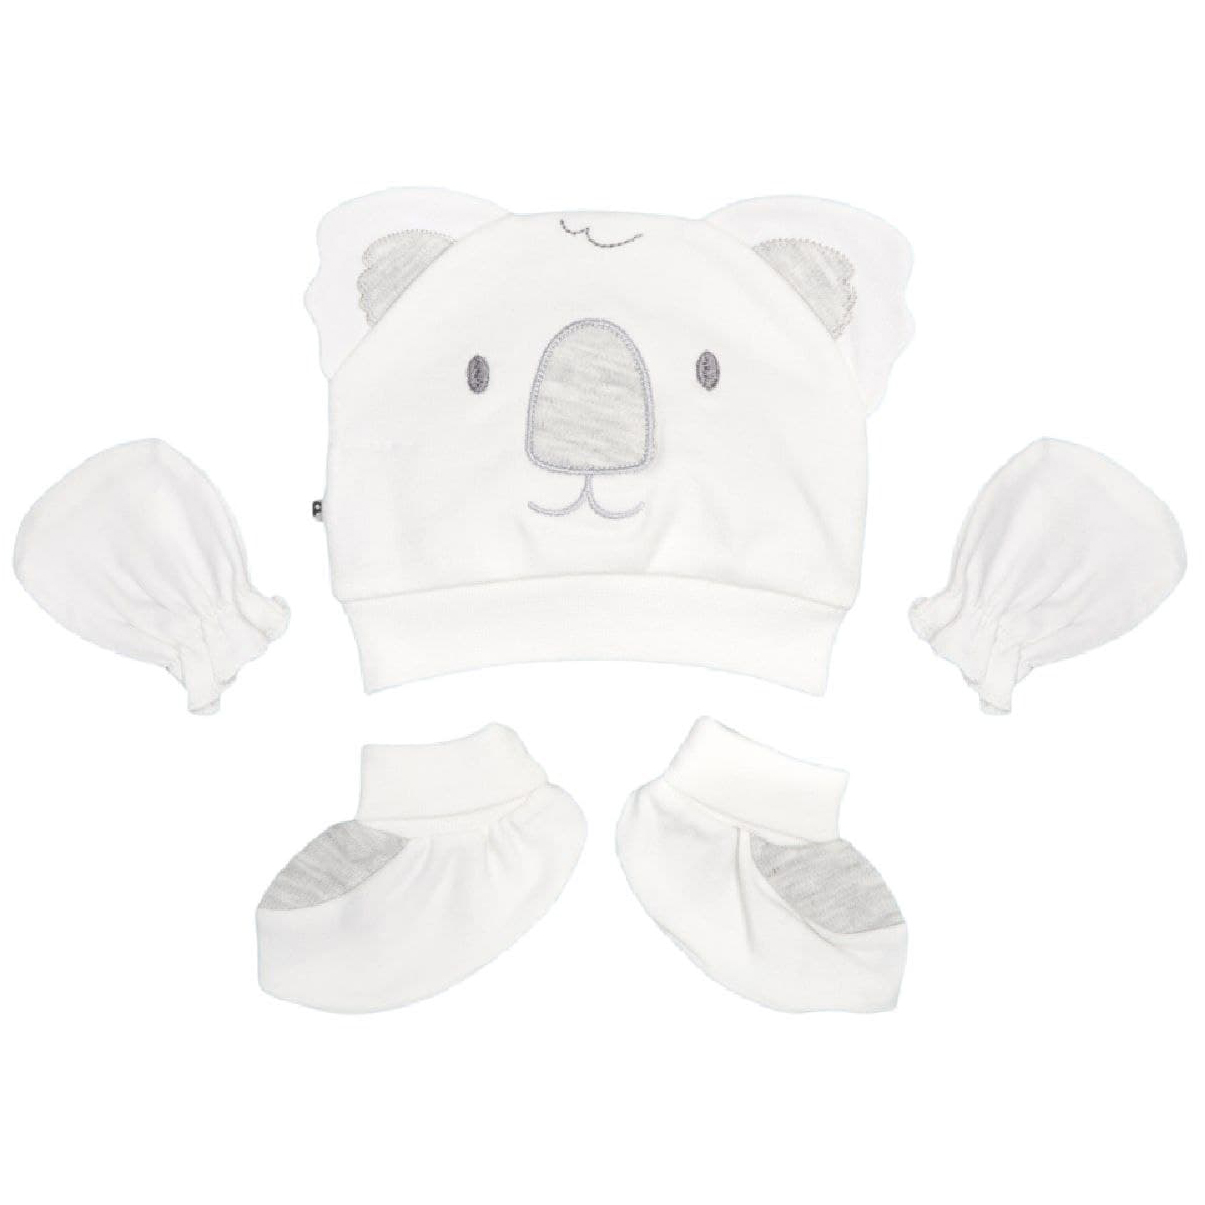 ست کلاه و دستکش و پاپوش نوزادی پاپو مدل کوالا رنگ سفید